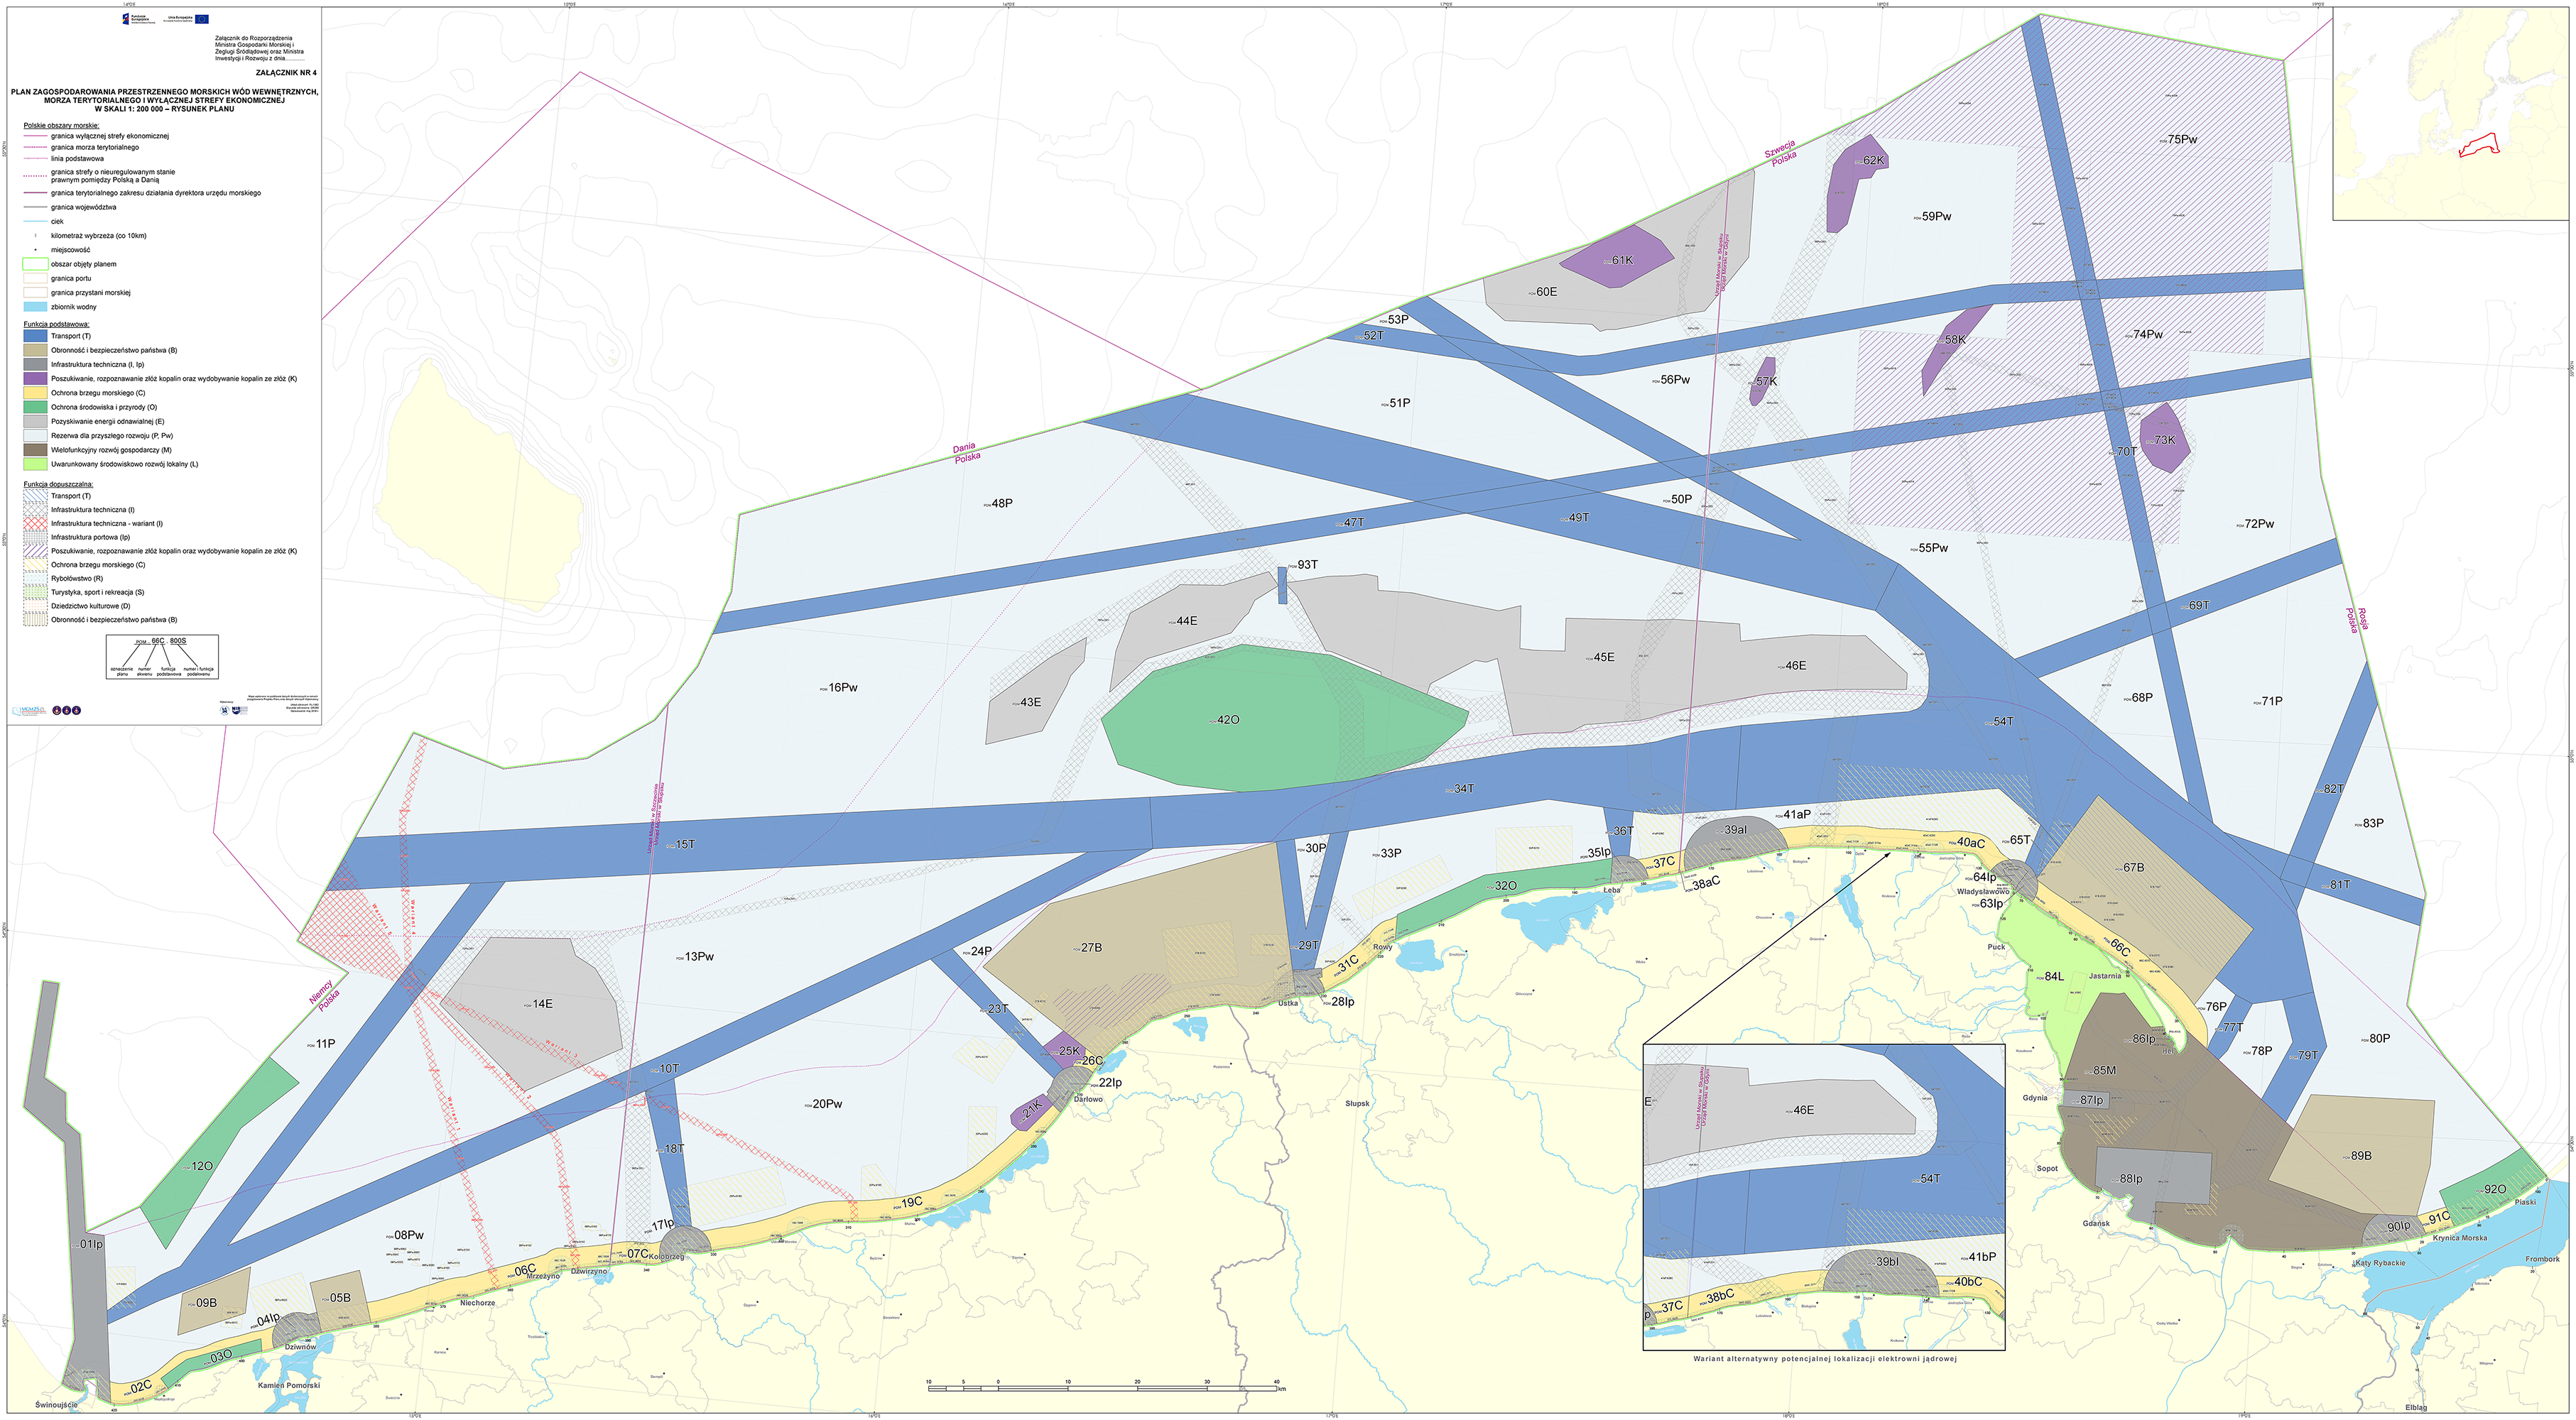 Plan zagospodarowania przestrzennego obszarów morskich w skali 1:200 000